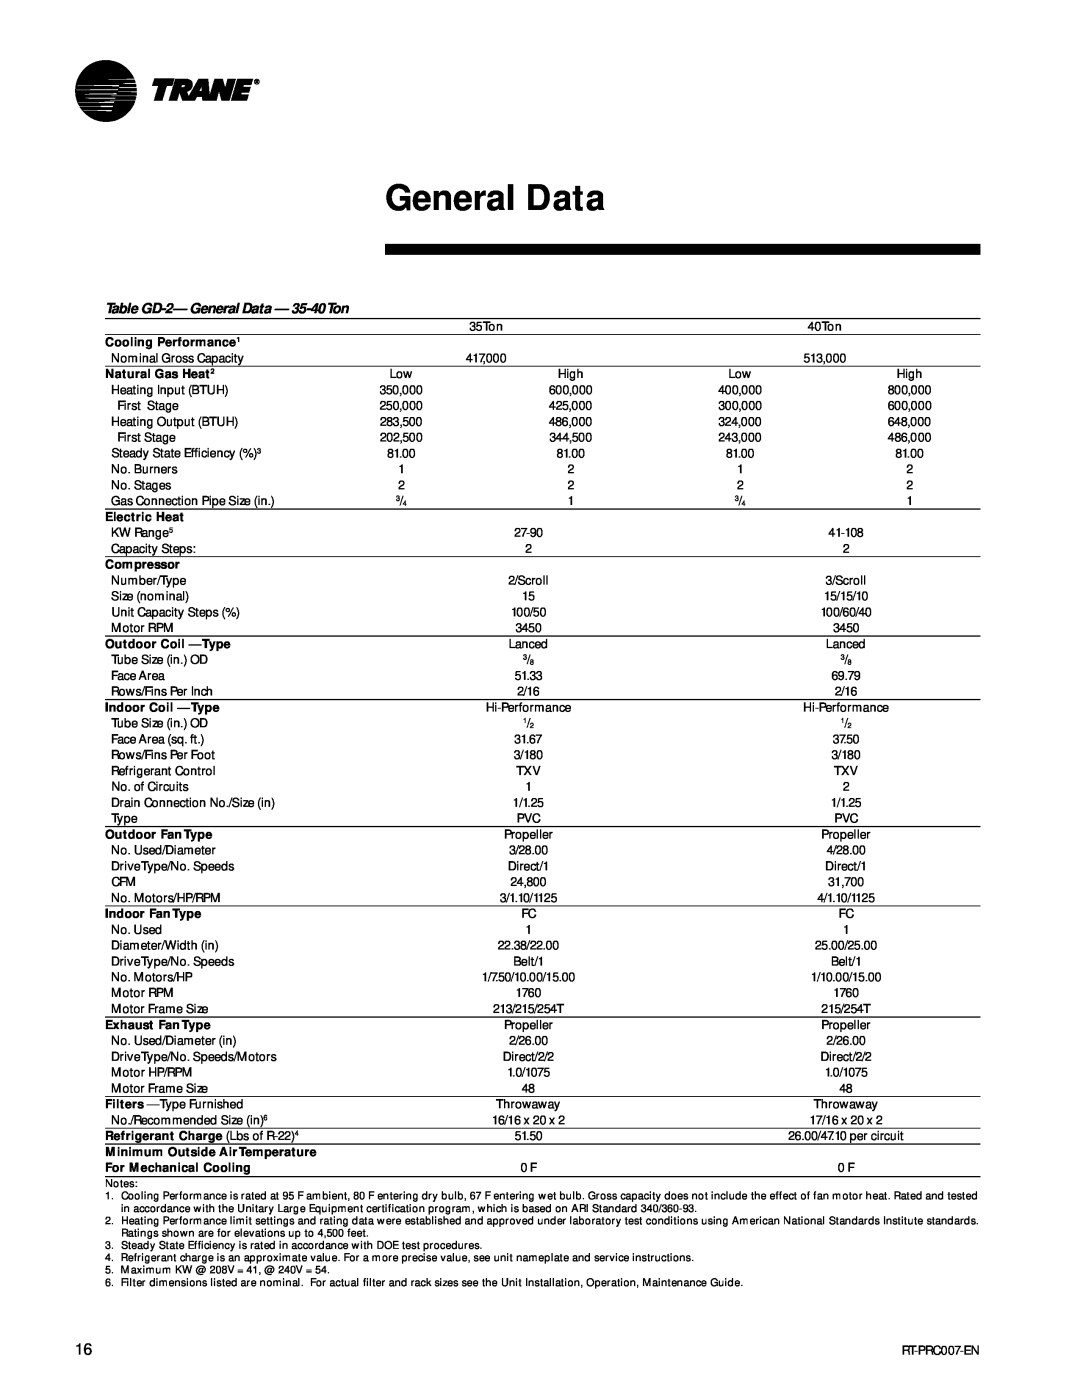 Trane RT-PRC007-EN manual Table GD-2-General Data - 35-40Ton 